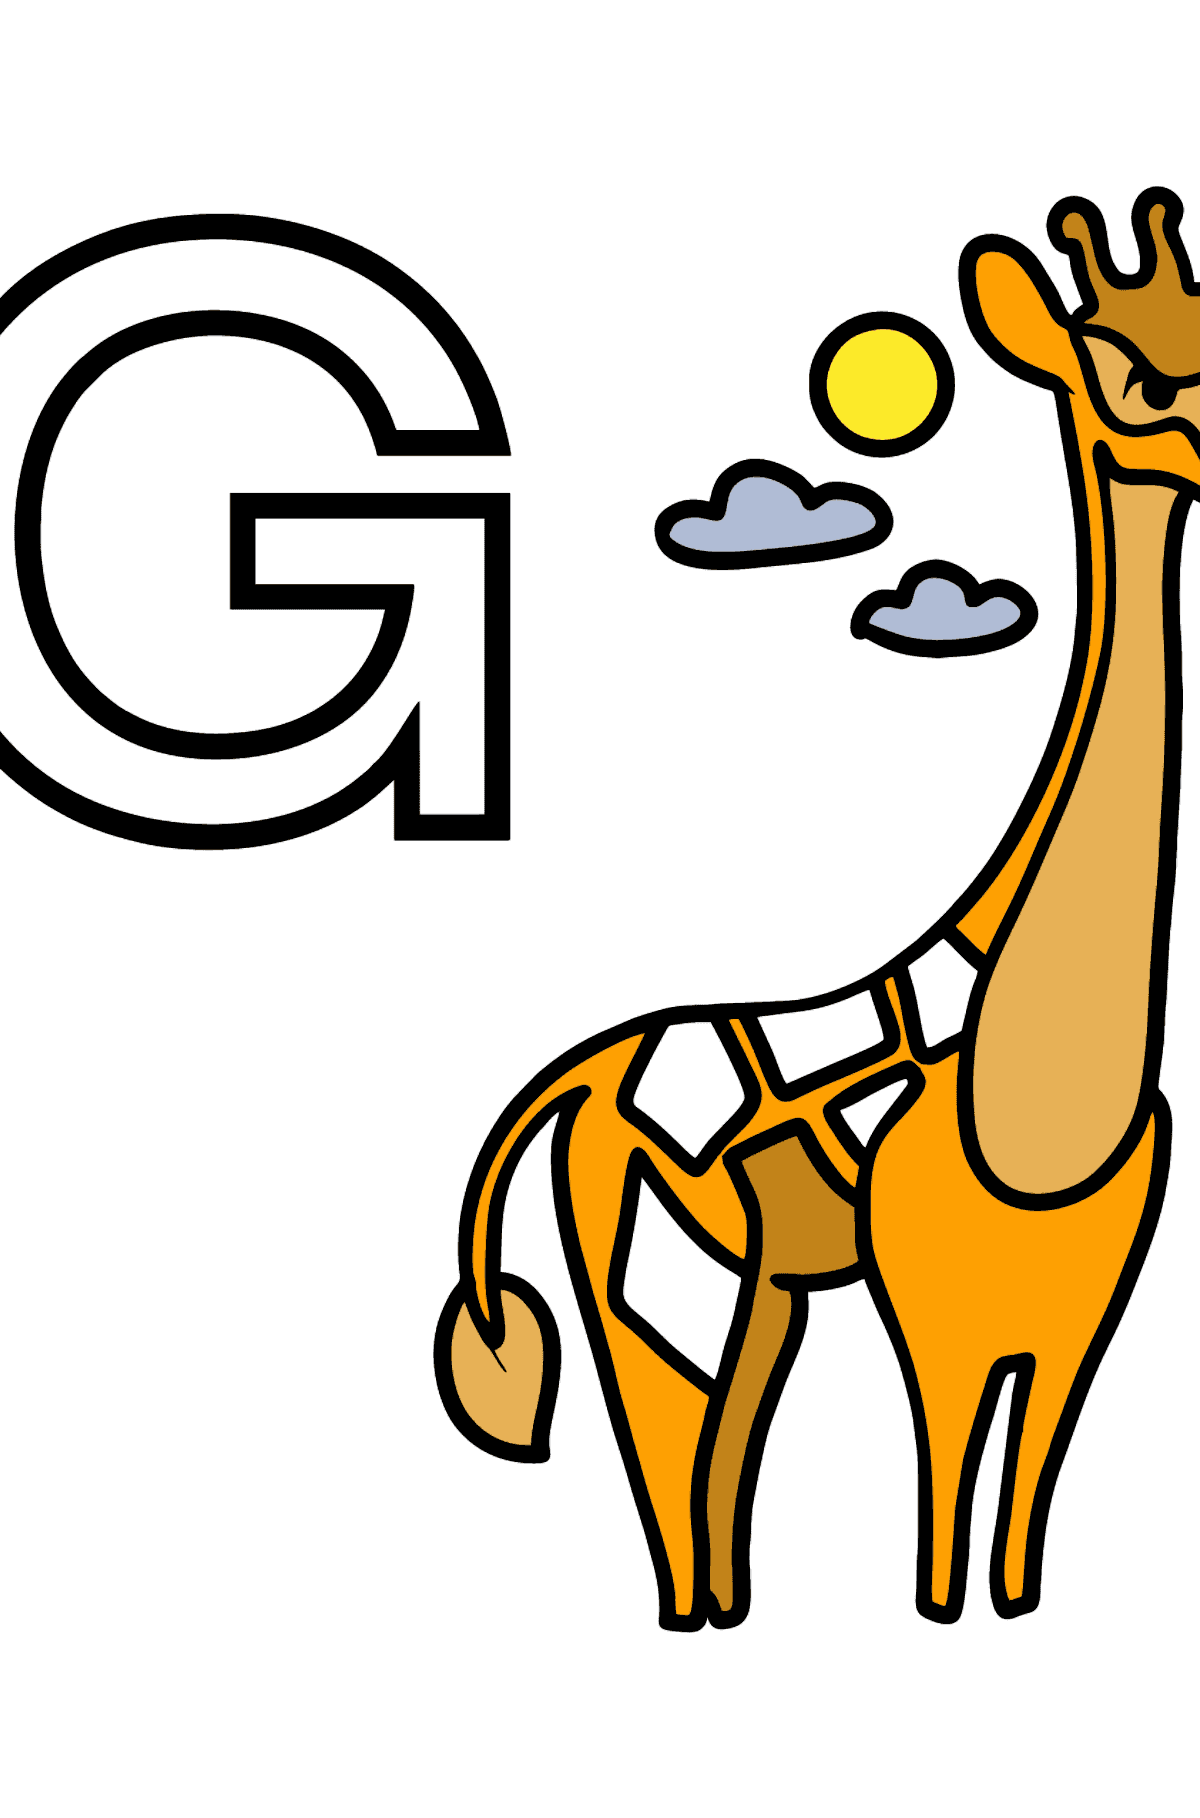 Раскраска Буква G - португальский алфавит - GIRAFA - Картинки для Детей